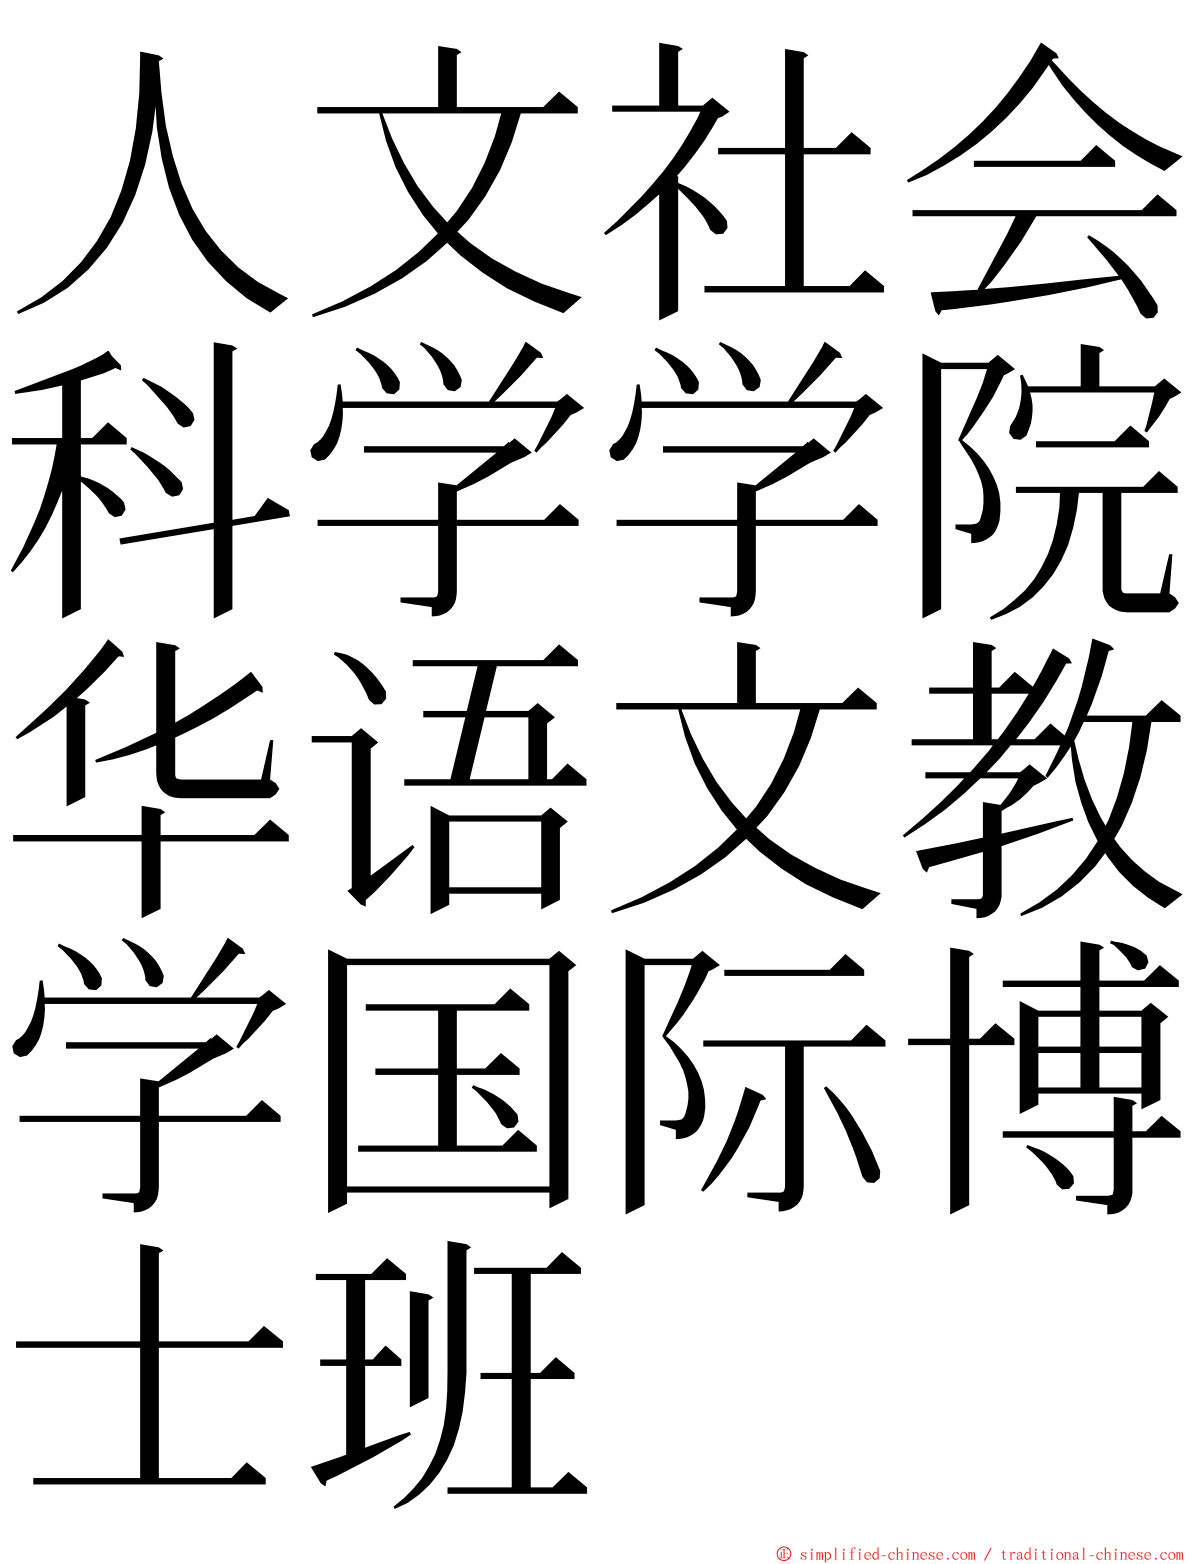 人文社会科学学院华语文教学国际博士班 ming font